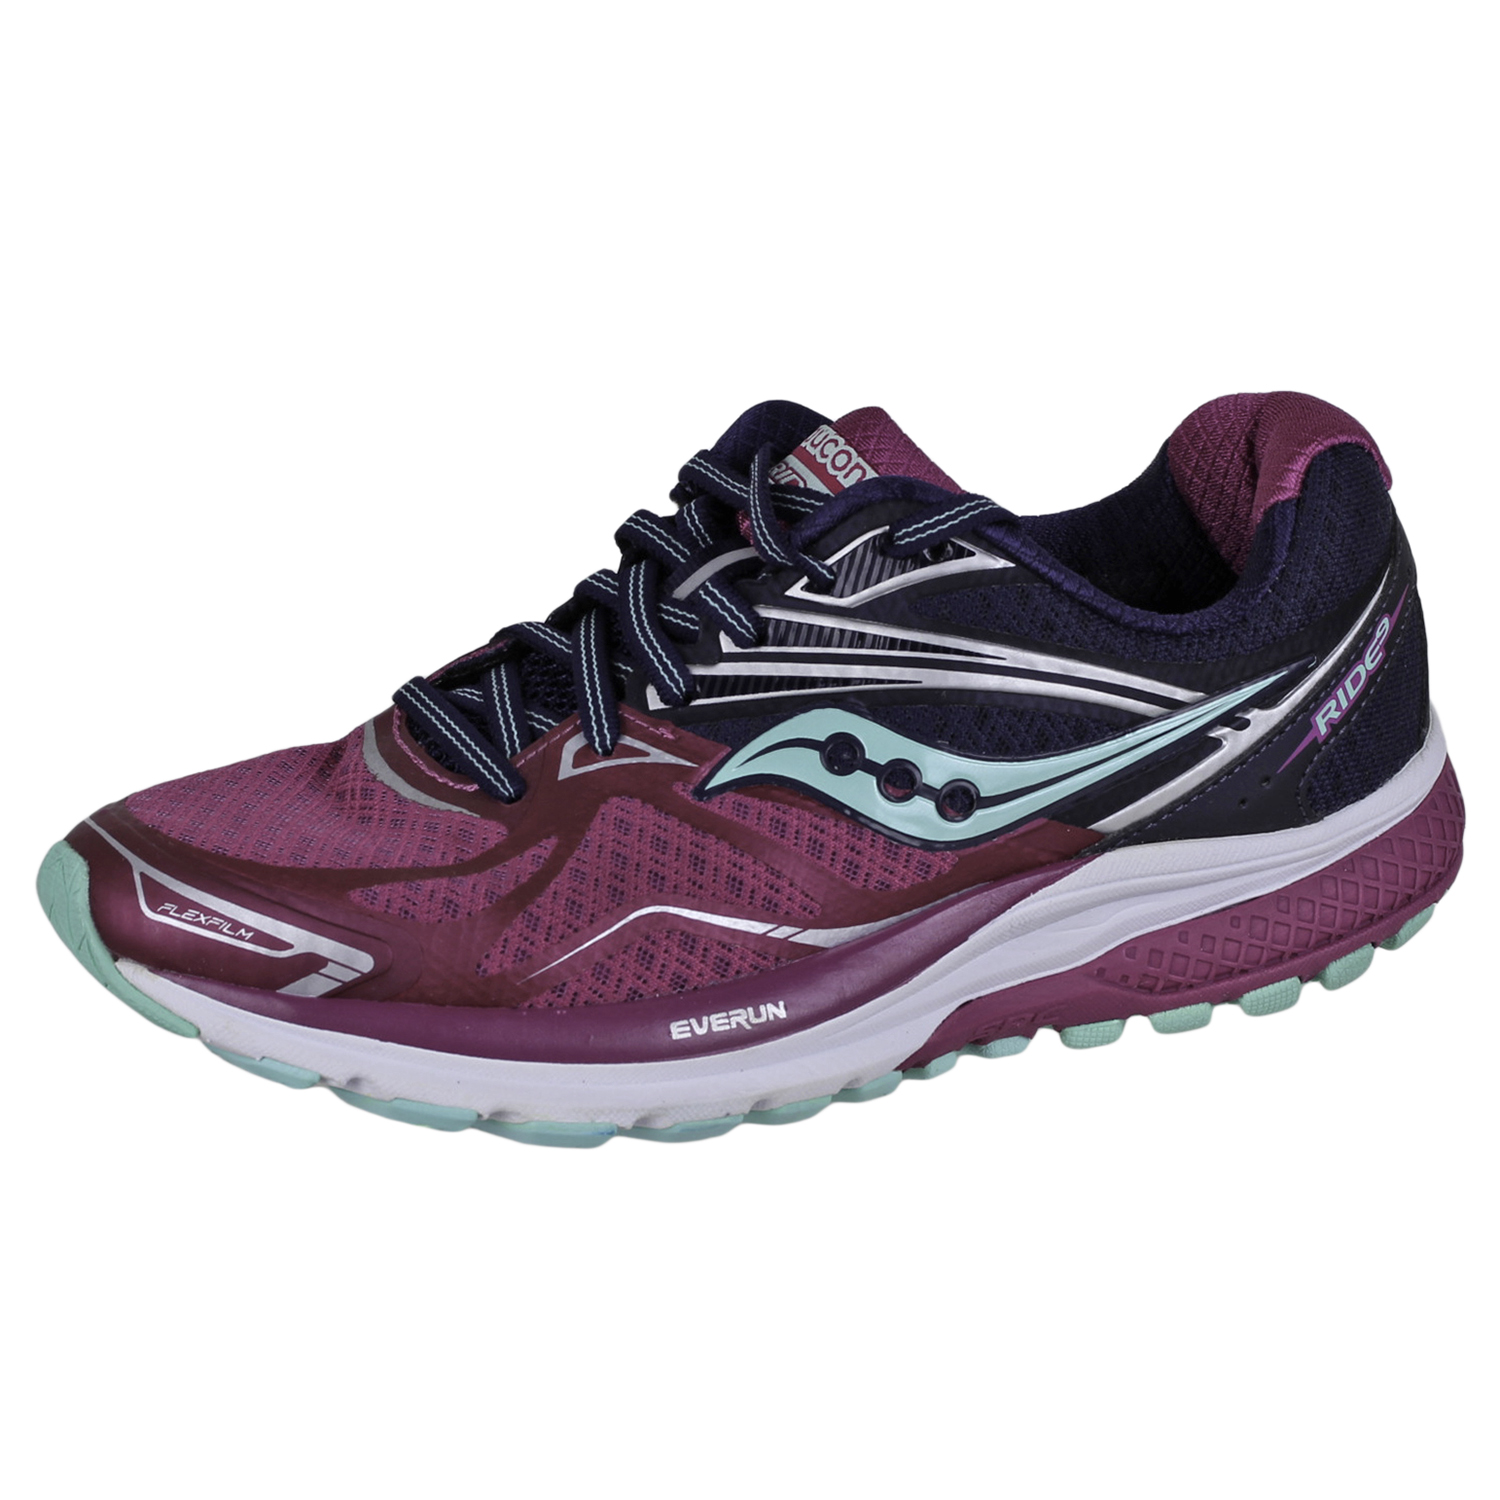 Saucony Ride 9 calzado para correr mujeres púrpura/azul/menta 9 | eBay